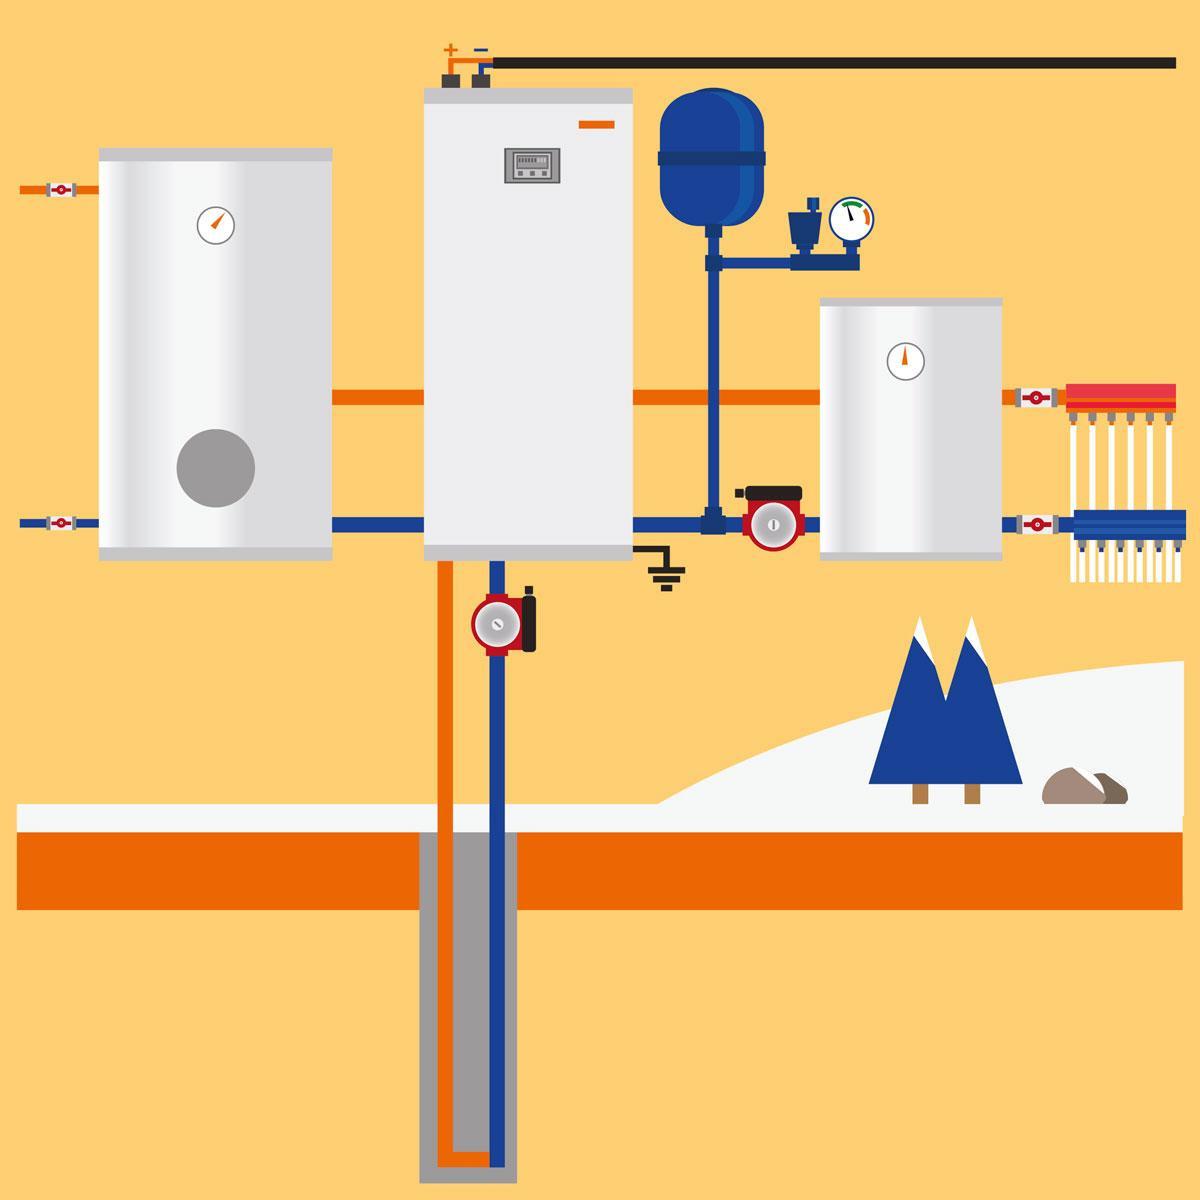 La pompe à chaleur émet beaucoup moins de CO2 mais se révèle plus coûteuse qu'une chaudière au gaz naturel.